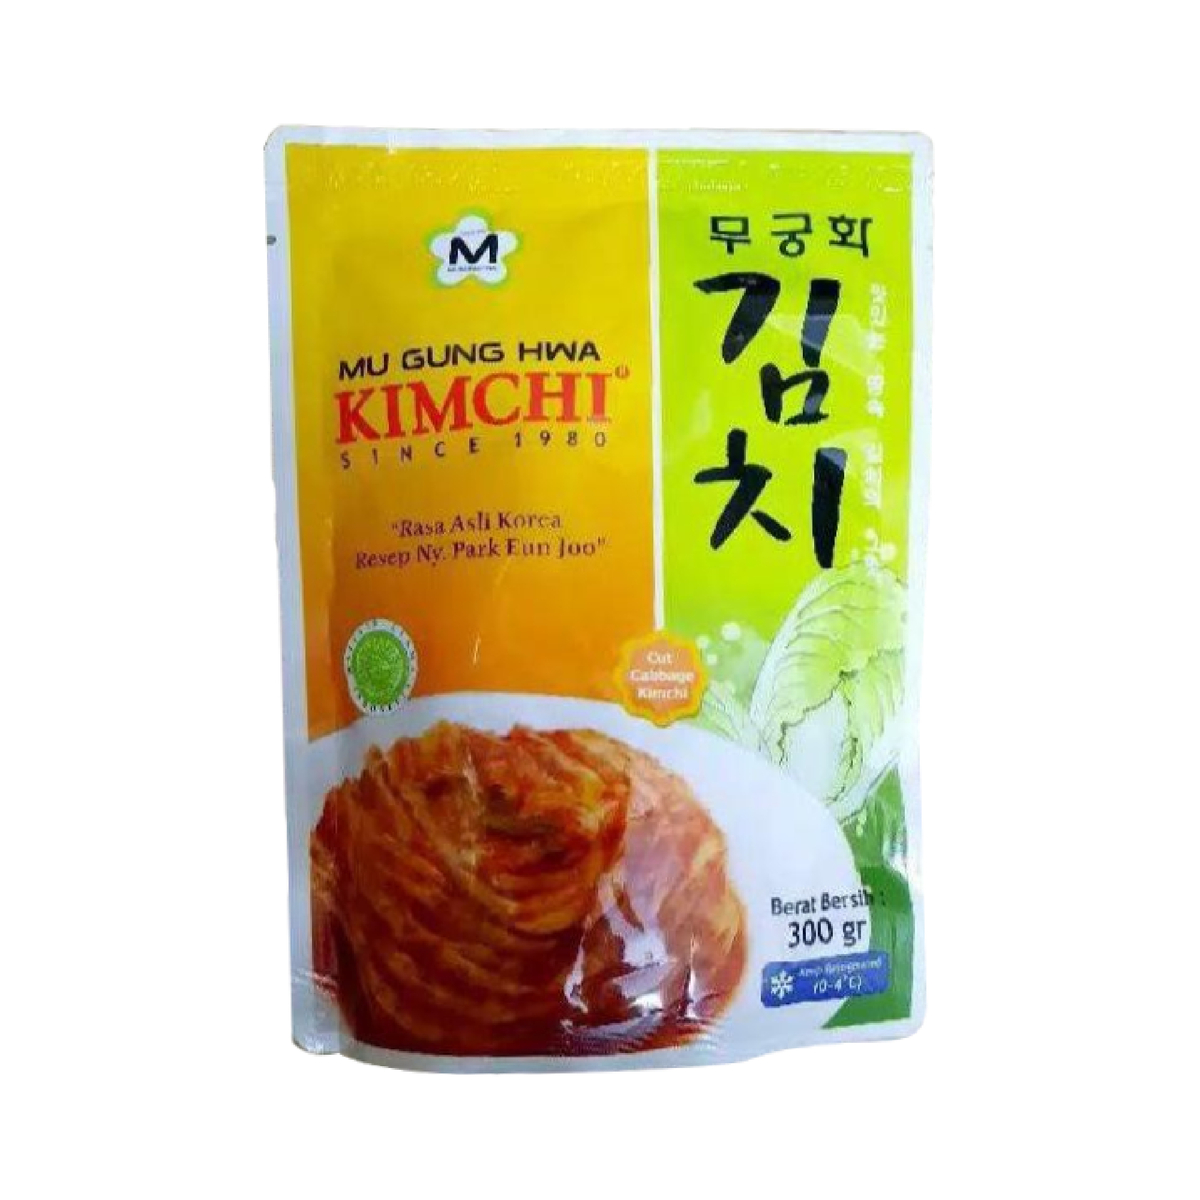 Kimchi Mu Gung Hwa Kimchi 300g